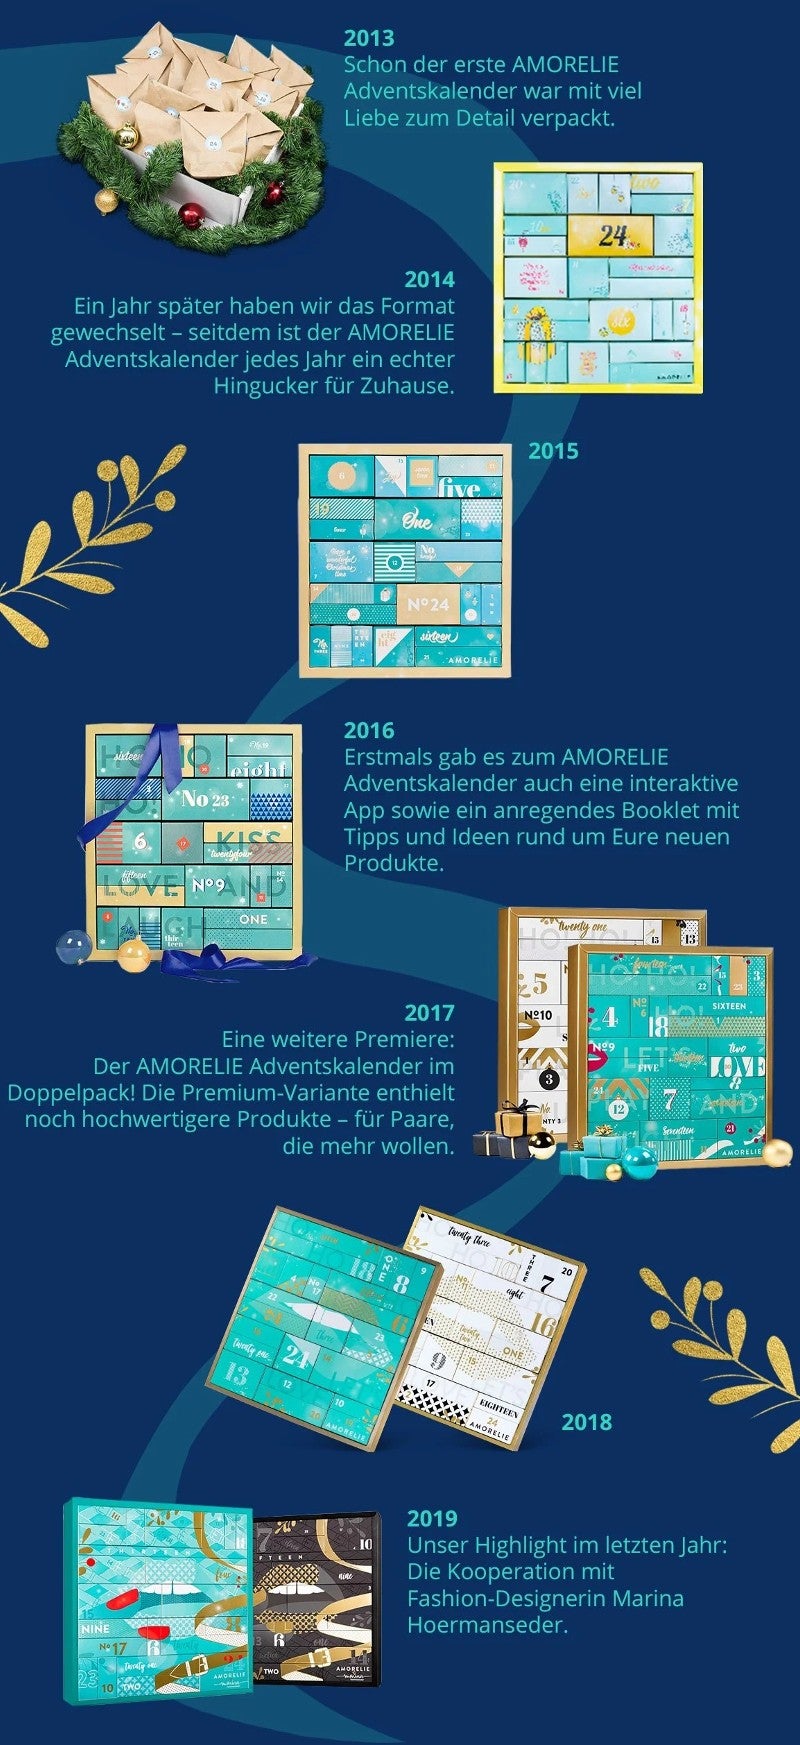 Die Entwicklung des Amorelie-Adventskalenders zwischen 2013 und 2019